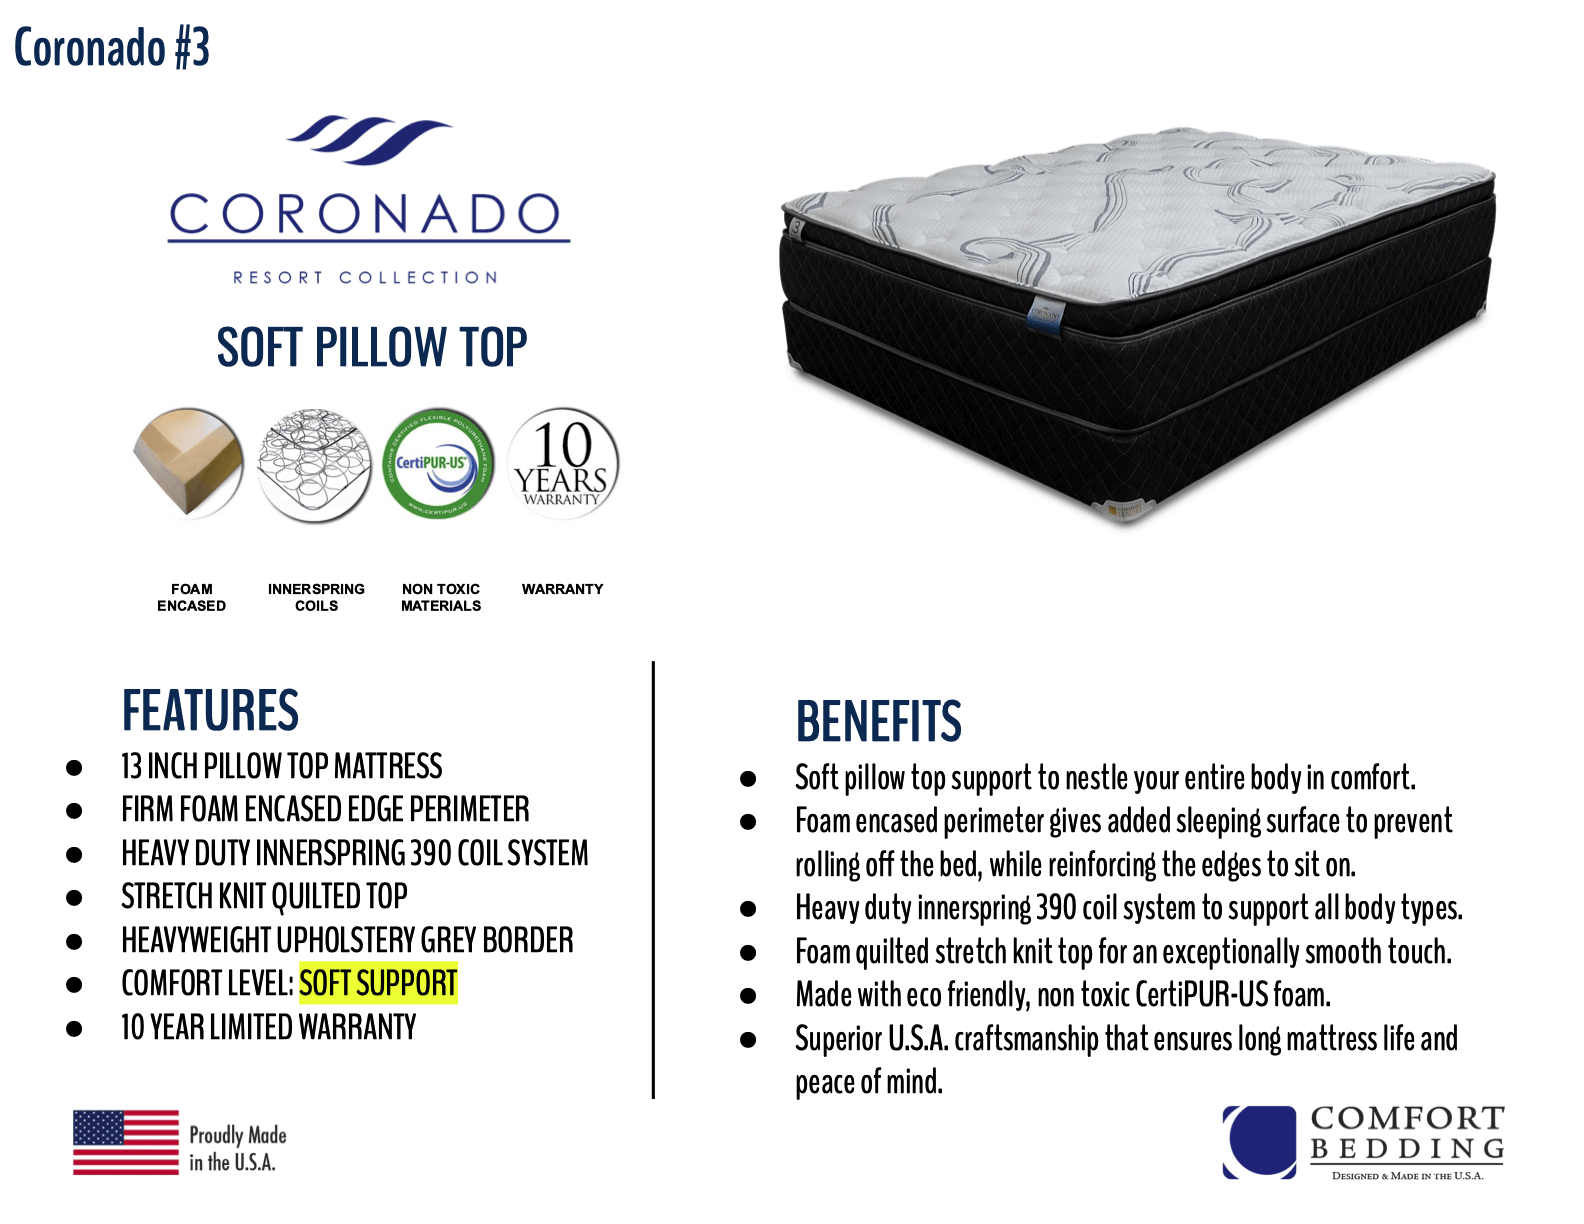 Coronado Soft Pillow Top Mattress By Comfort Bedding